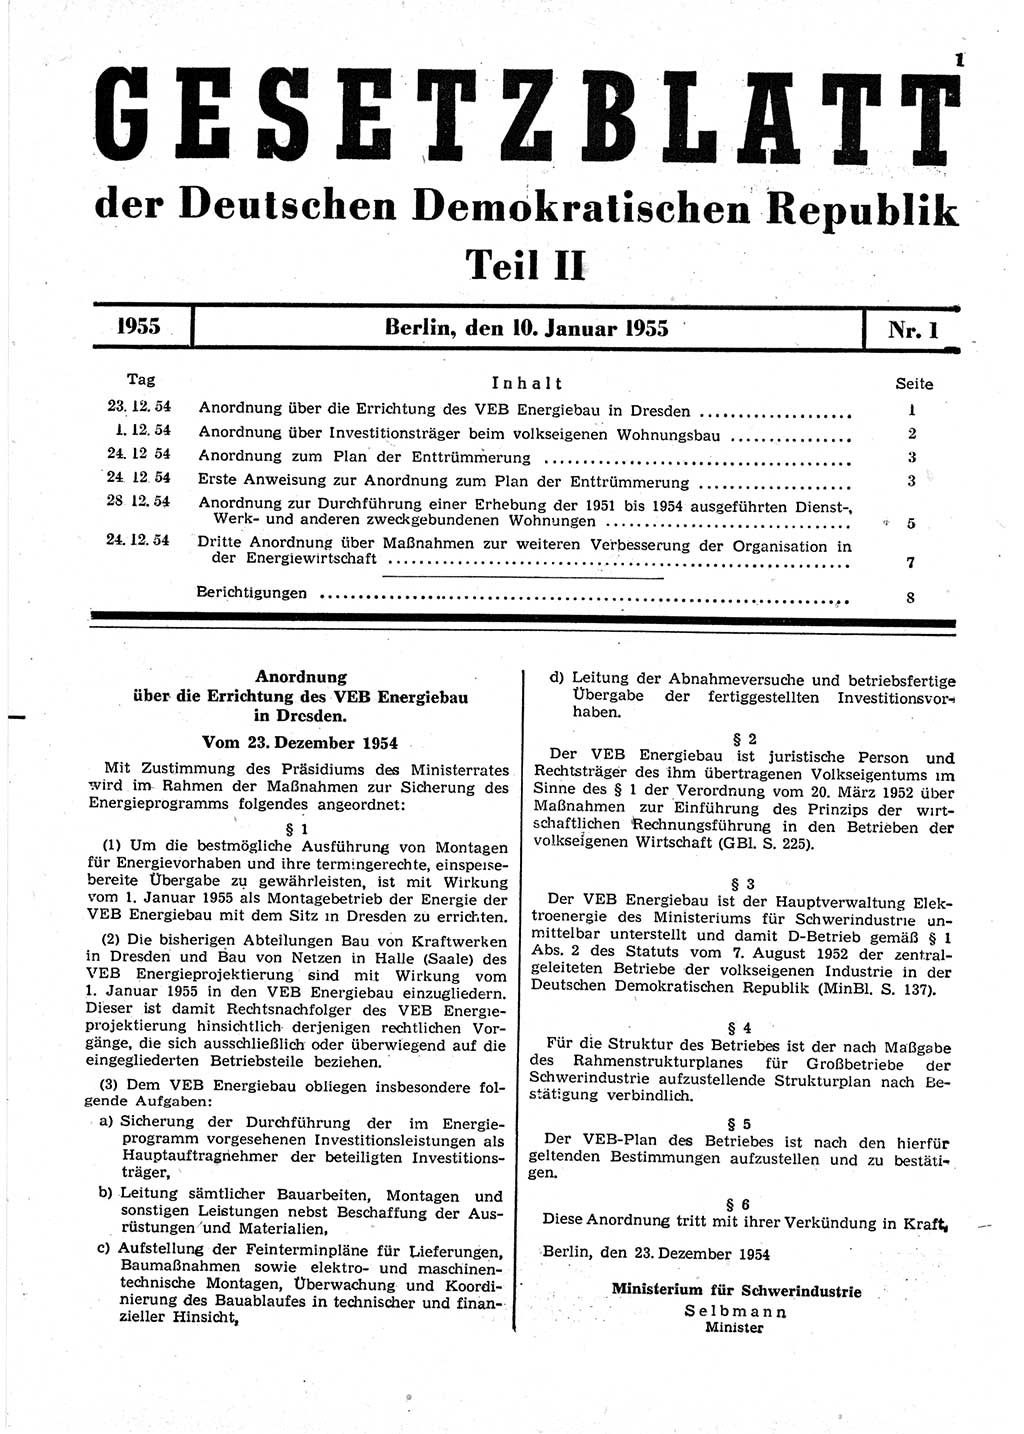 Gesetzblatt (GBl.) der Deutschen Demokratischen Republik (DDR) Teil ⅠⅠ 1955, Seite 1 (GBl. DDR ⅠⅠ 1955, S. 1)